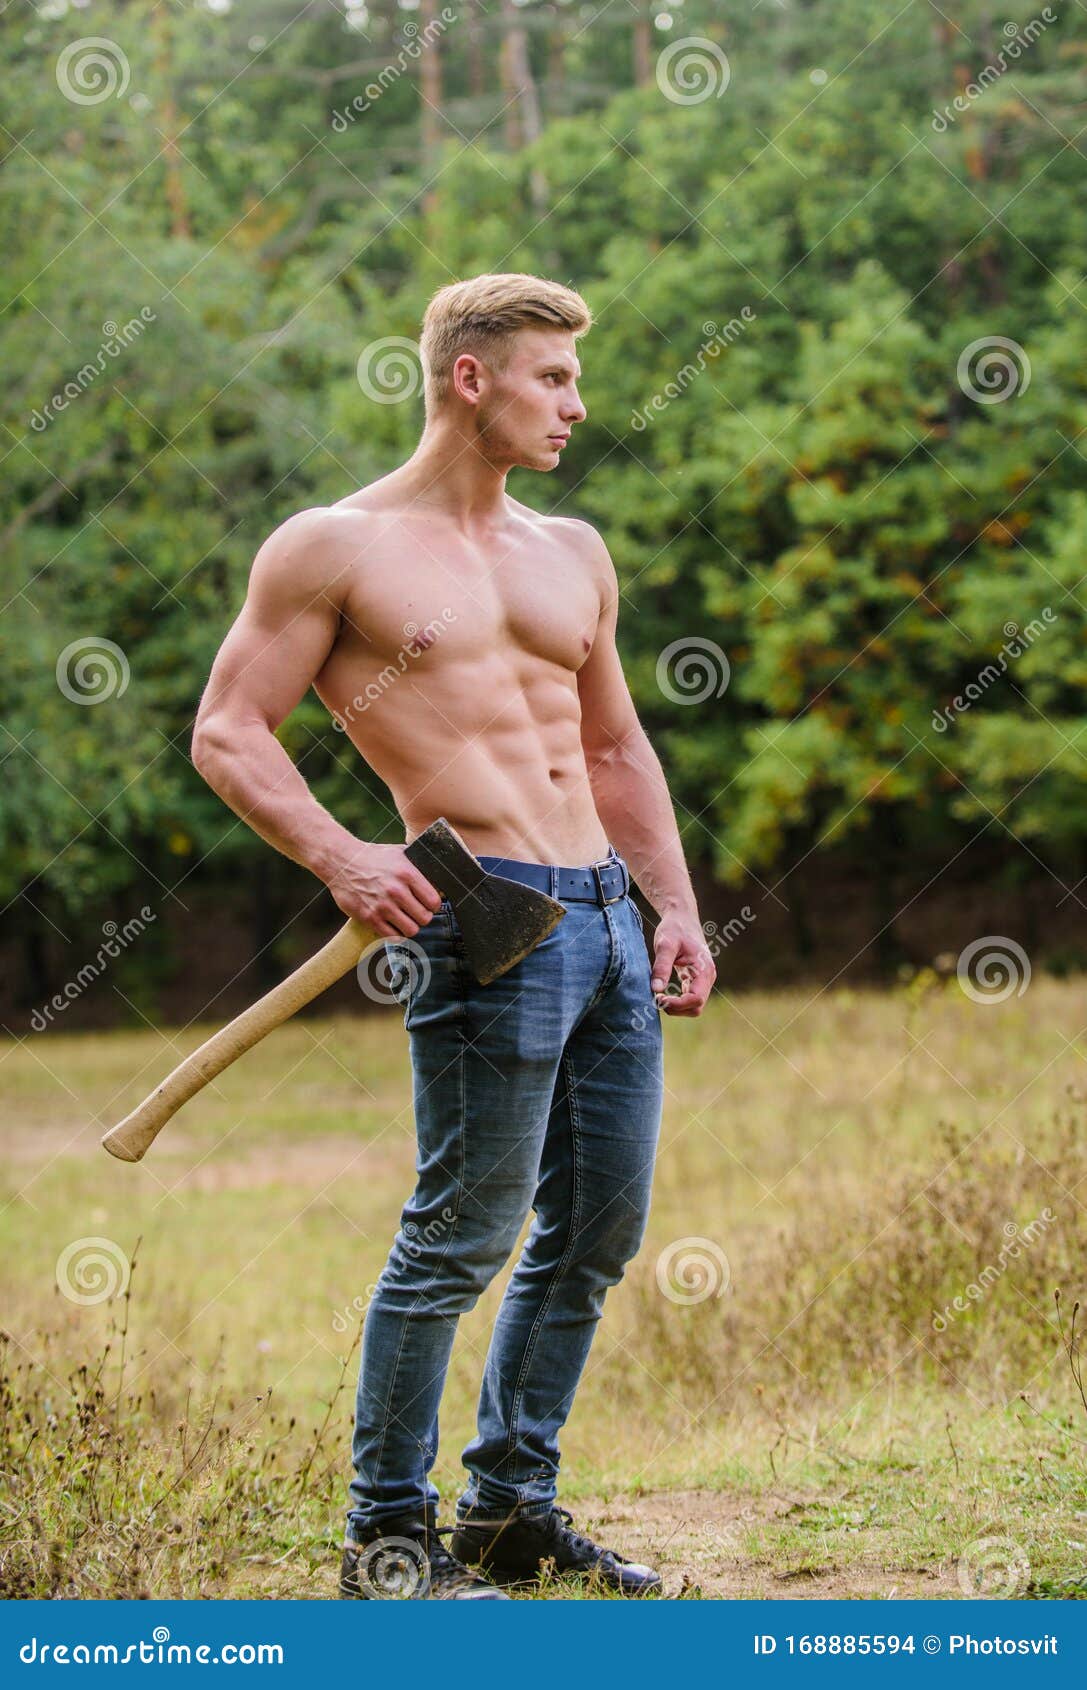 Max wood bodybuilder